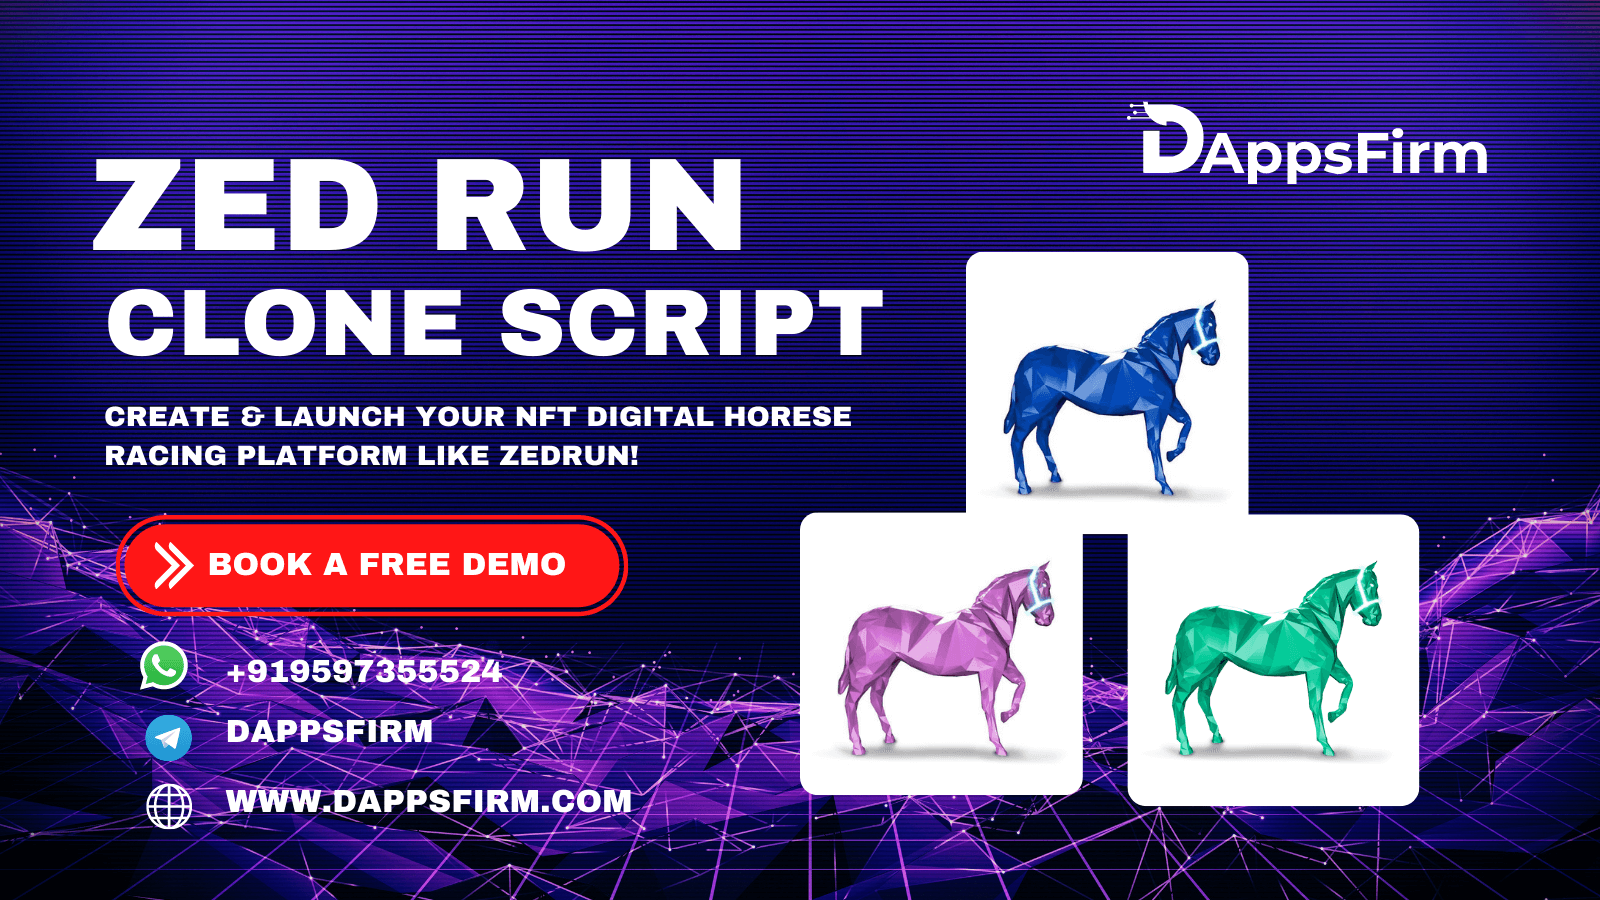 Zed run Clone script To Run A Successful NFT Digital Horse Racing Platform!